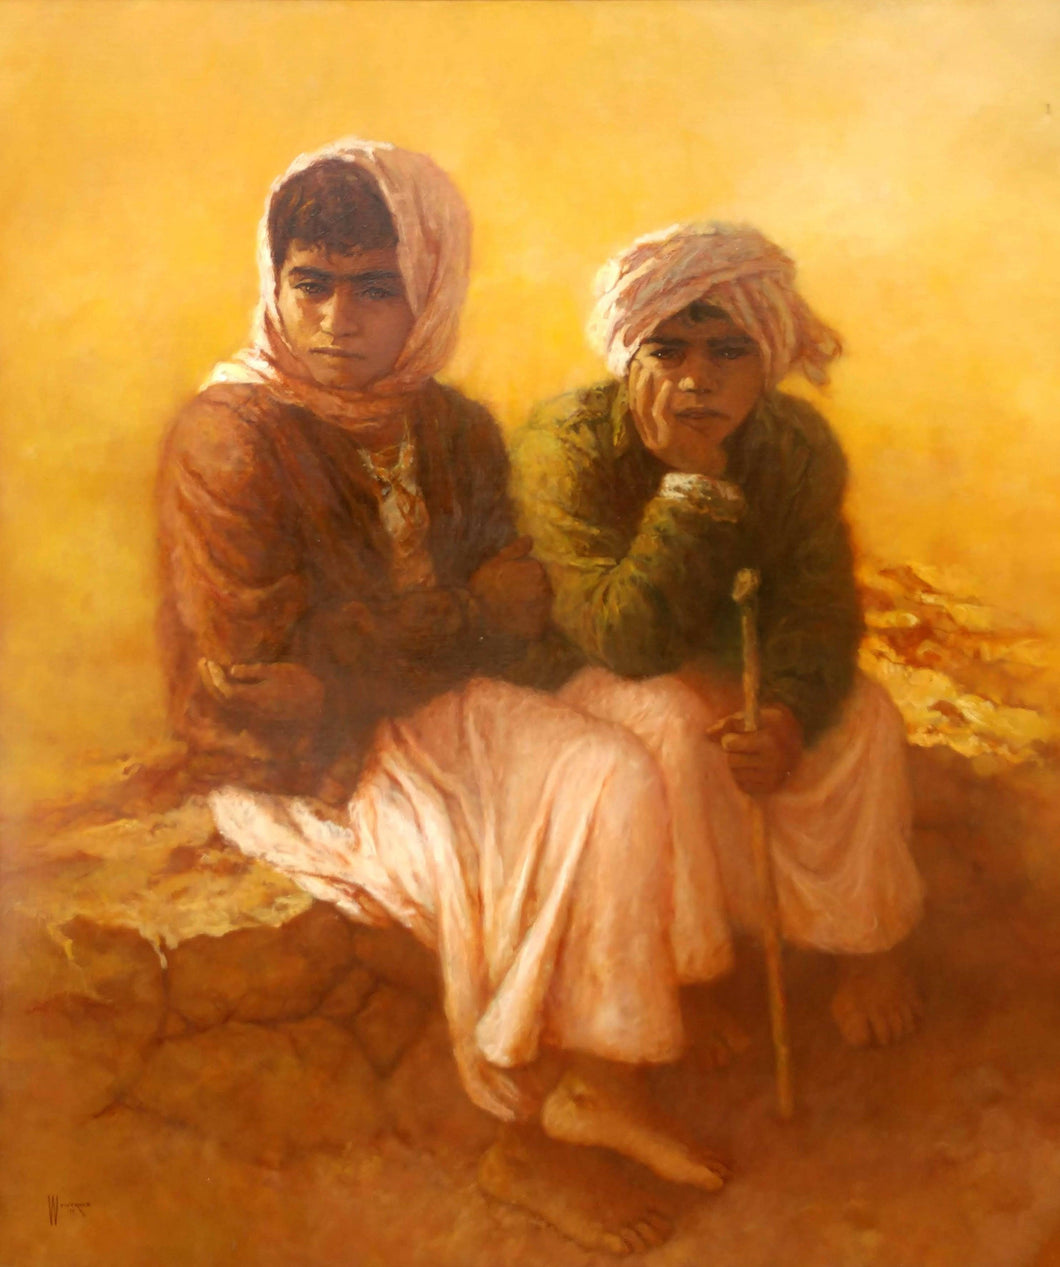 Desert Children Oil | William Weintraub,{{product.type}}